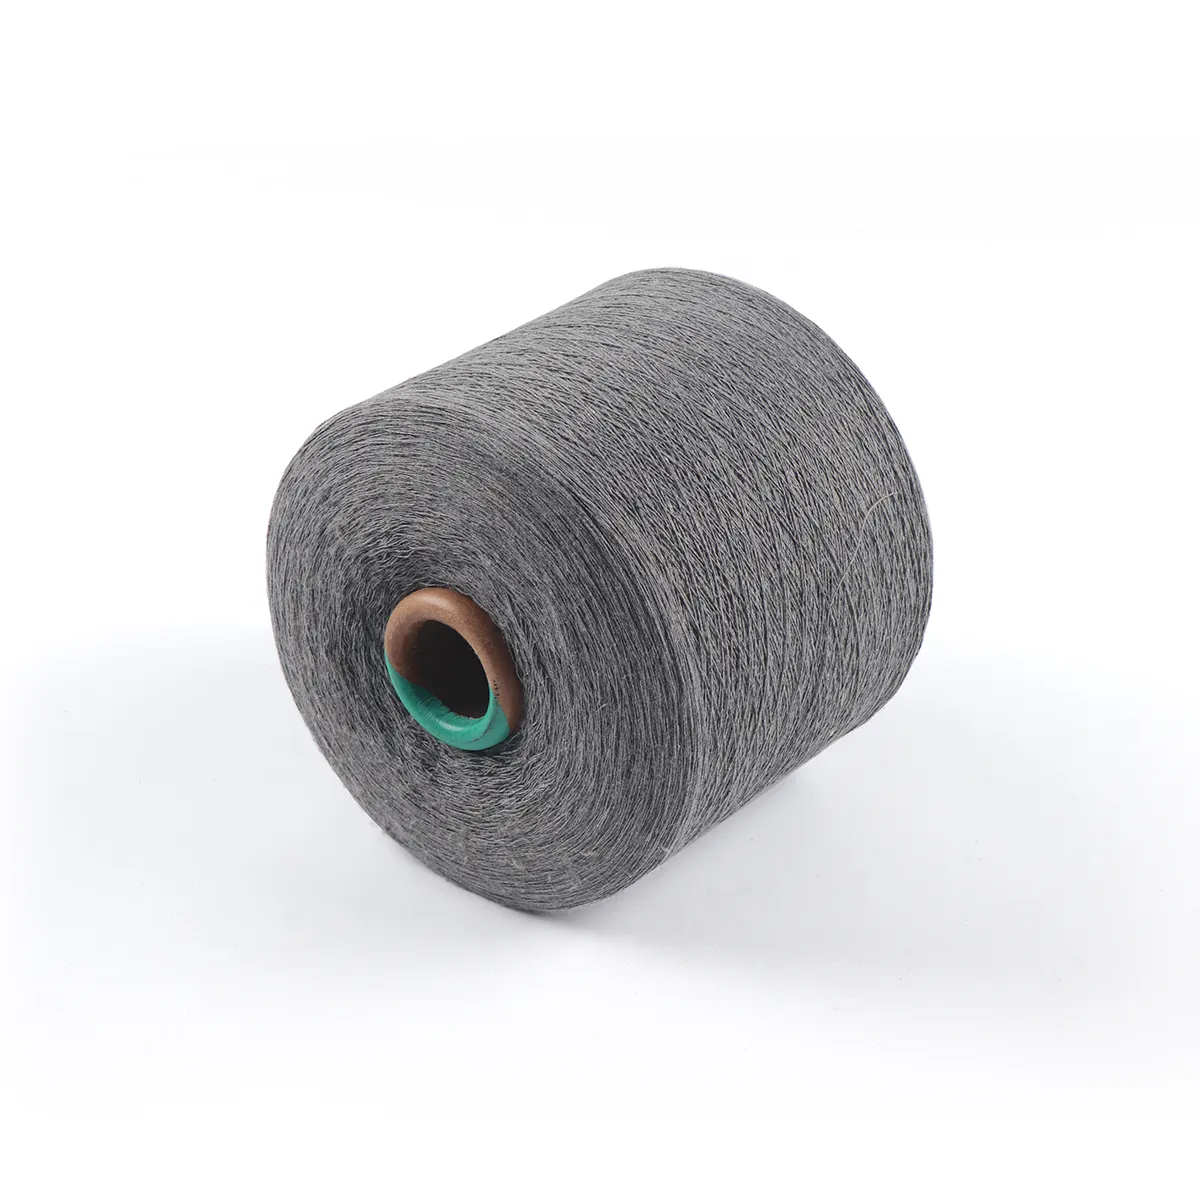 生のカードコンパクトオープンエンドリングスパン織り編み糸価格Ne16S純粋な100% コーマ綿糸